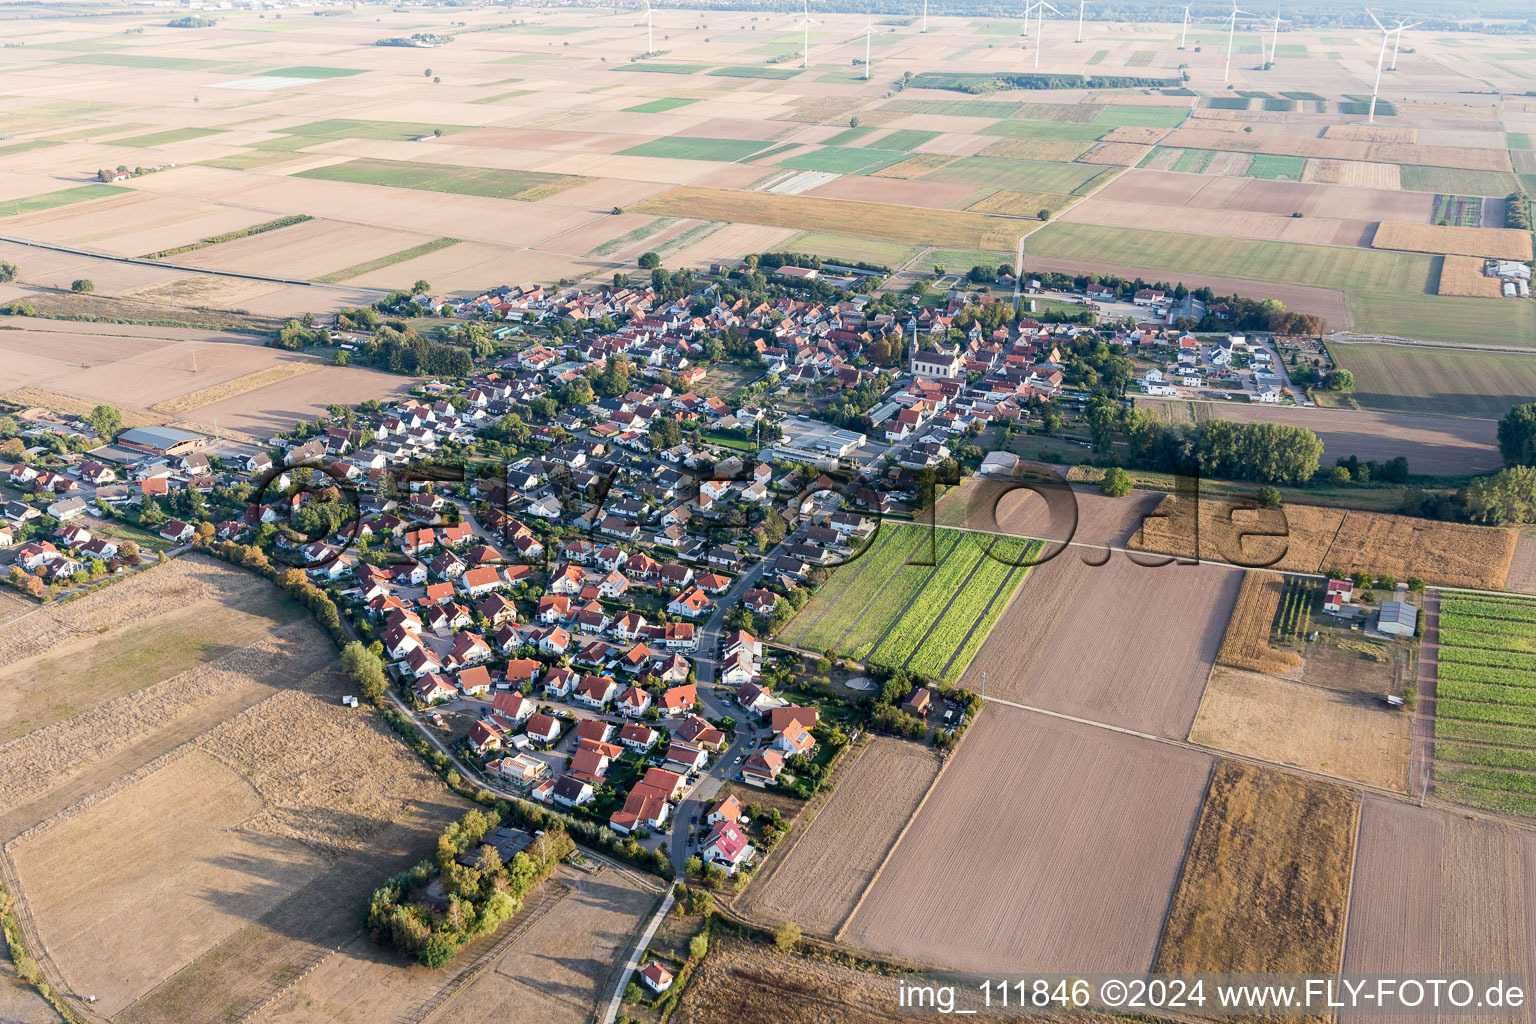 Vue aérienne de Vue sur la commune en bordure de champs agricoles et de zones agricoles à Knittelsheim dans le département Rhénanie-Palatinat, Allemagne